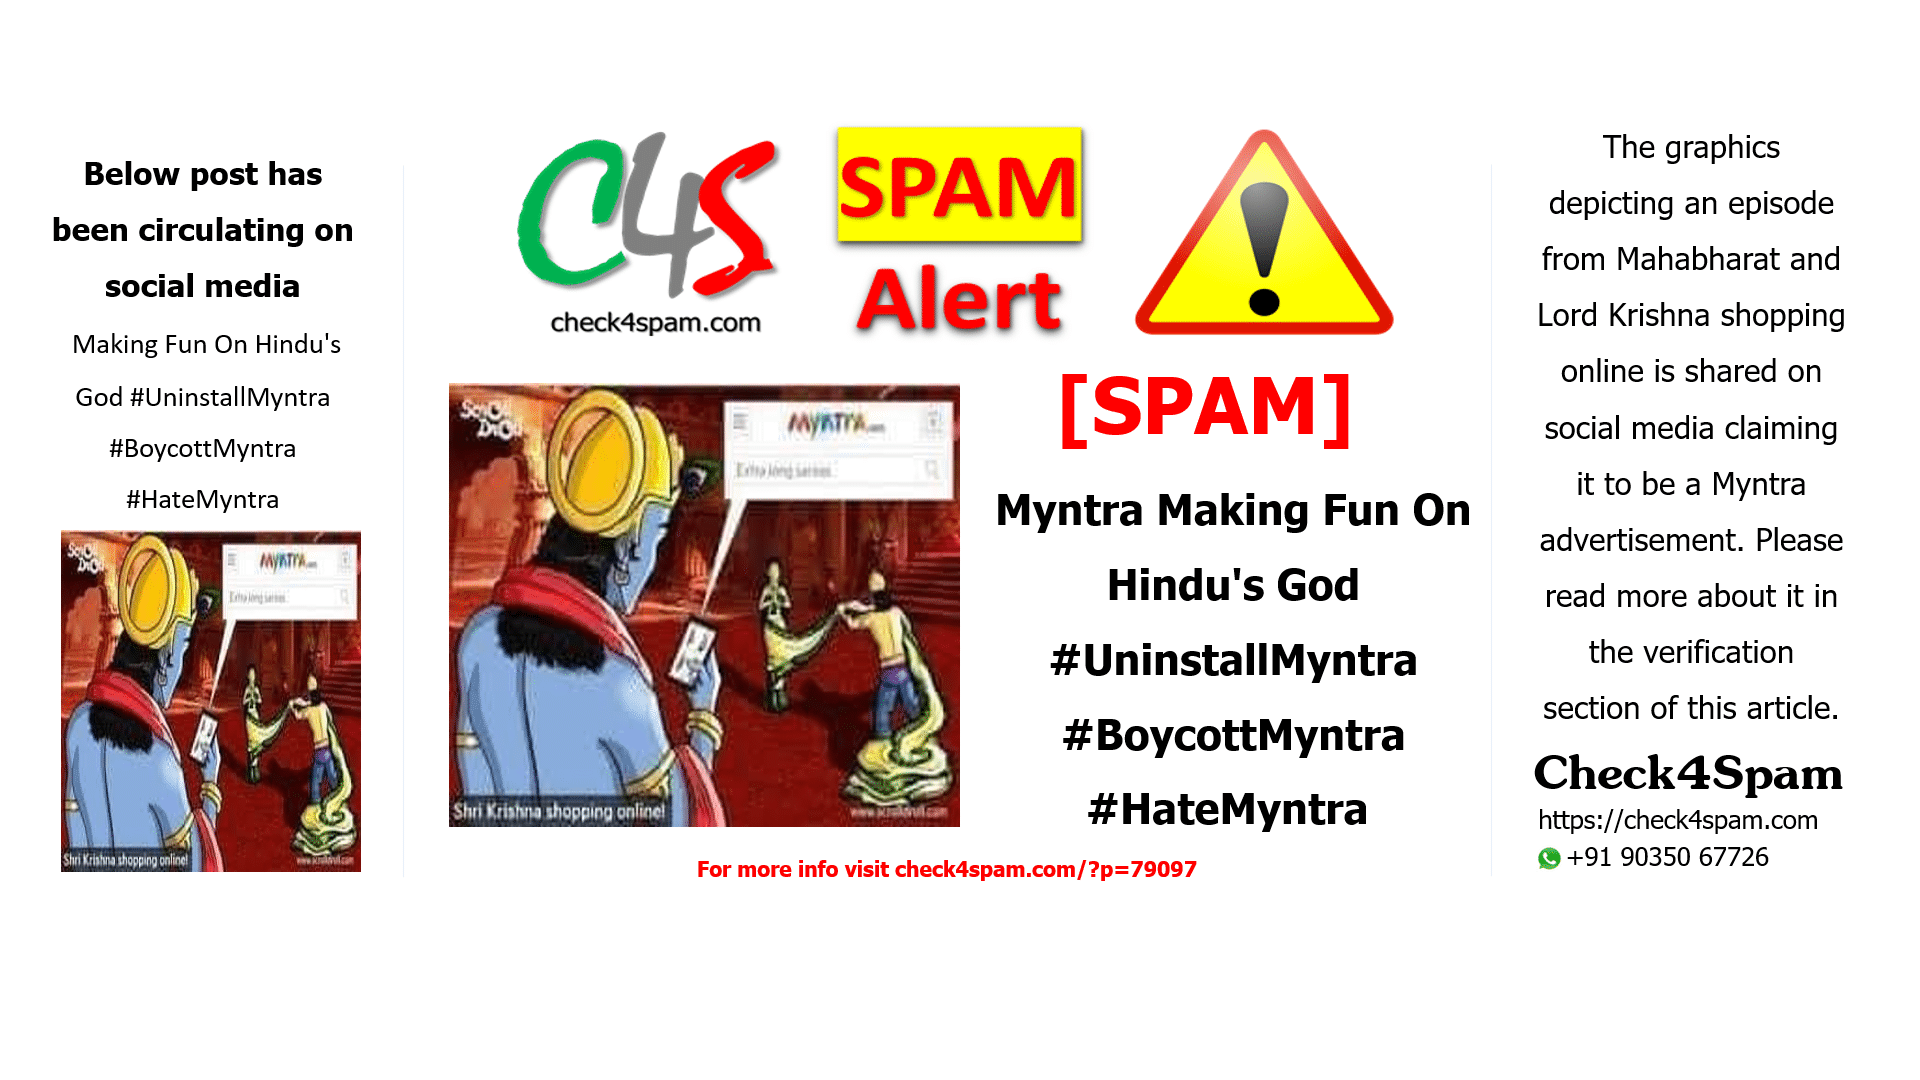 Myntra Making Fun On Hindu's God #UninstallMyntra #BoycottMyntra #HateMyntra